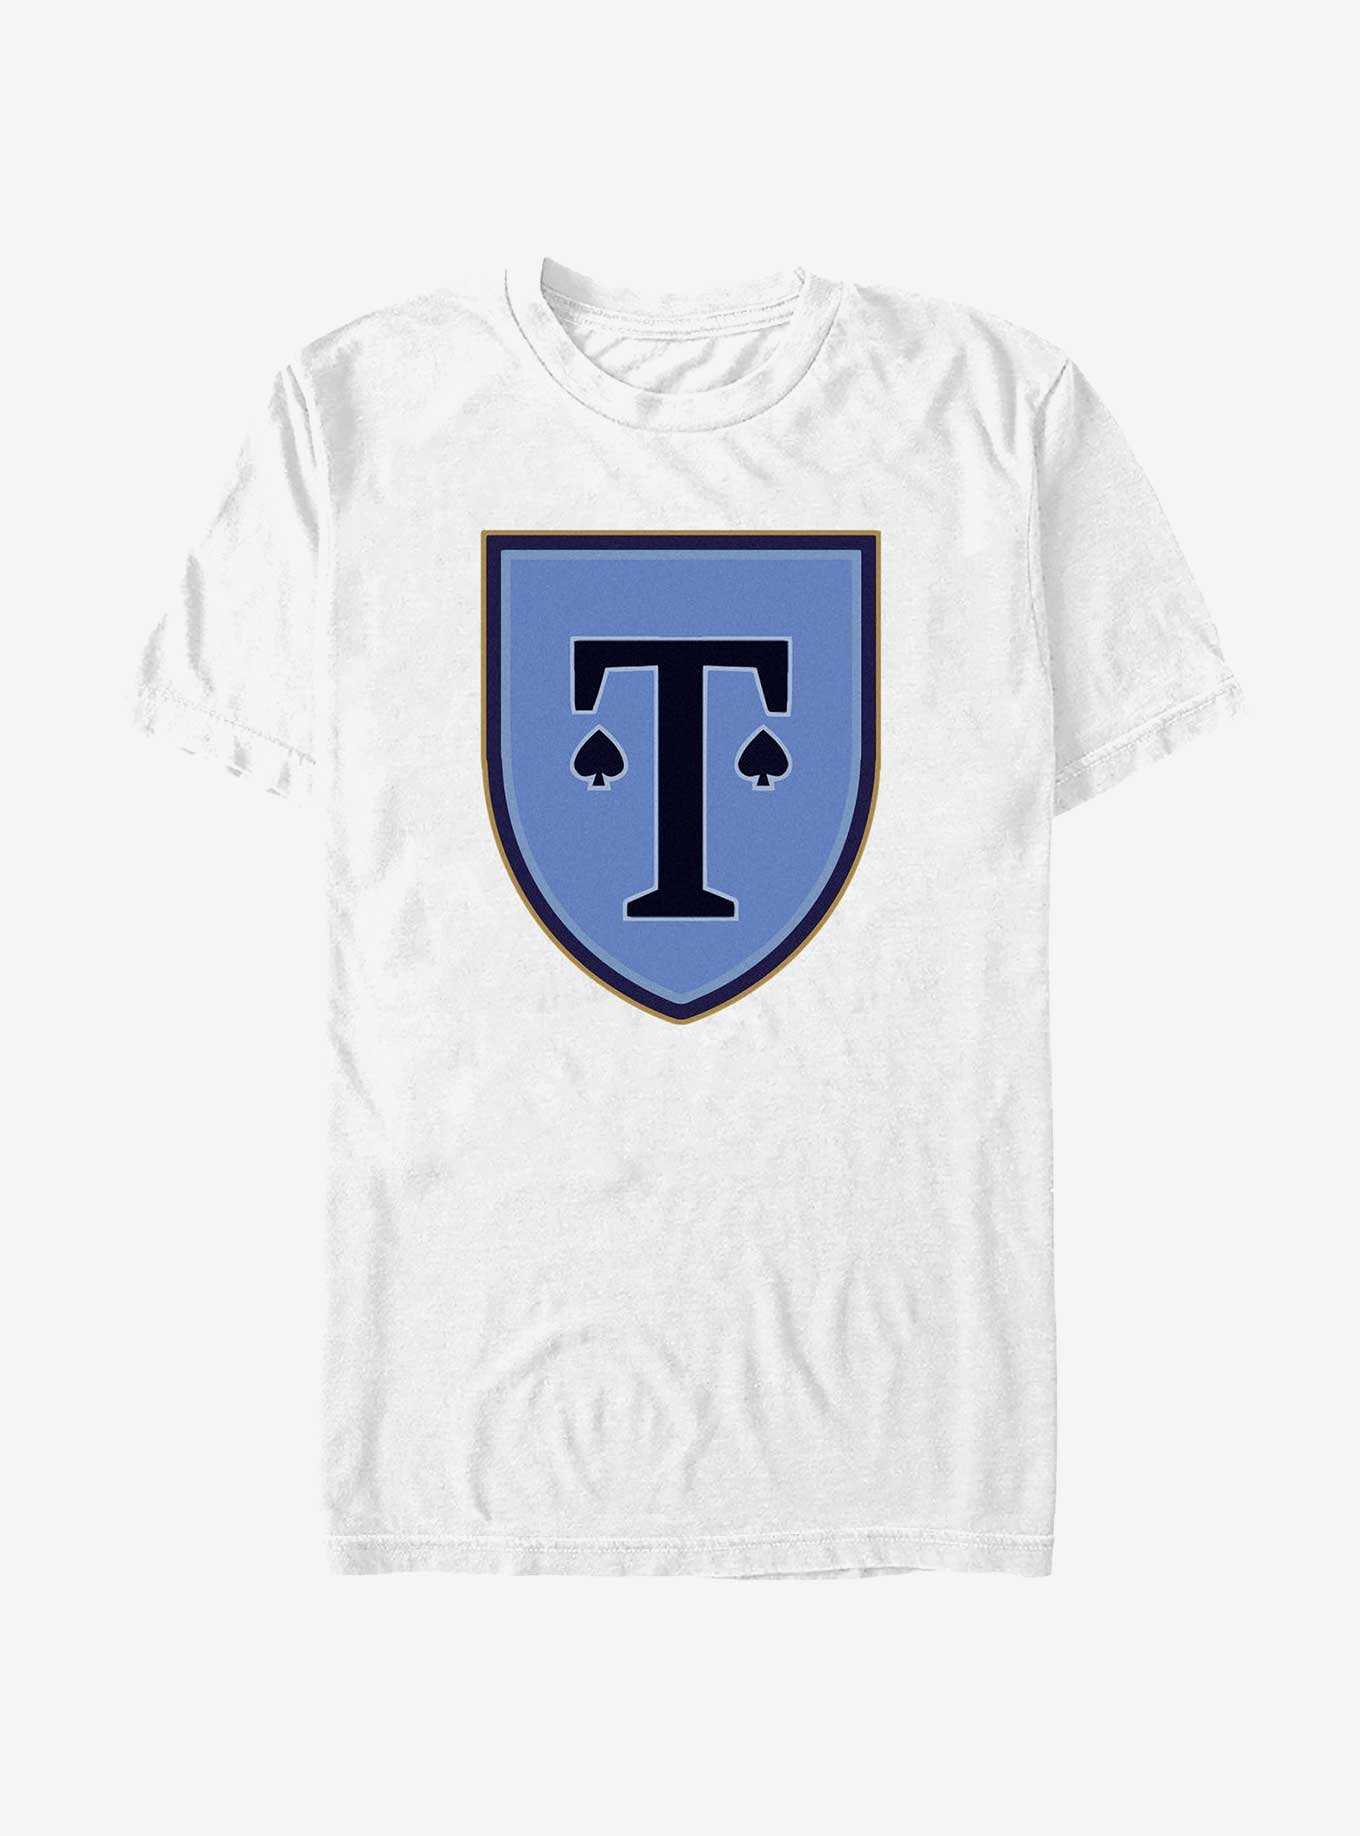 Heartstopper Truham School Crest T-Shirt, , hi-res